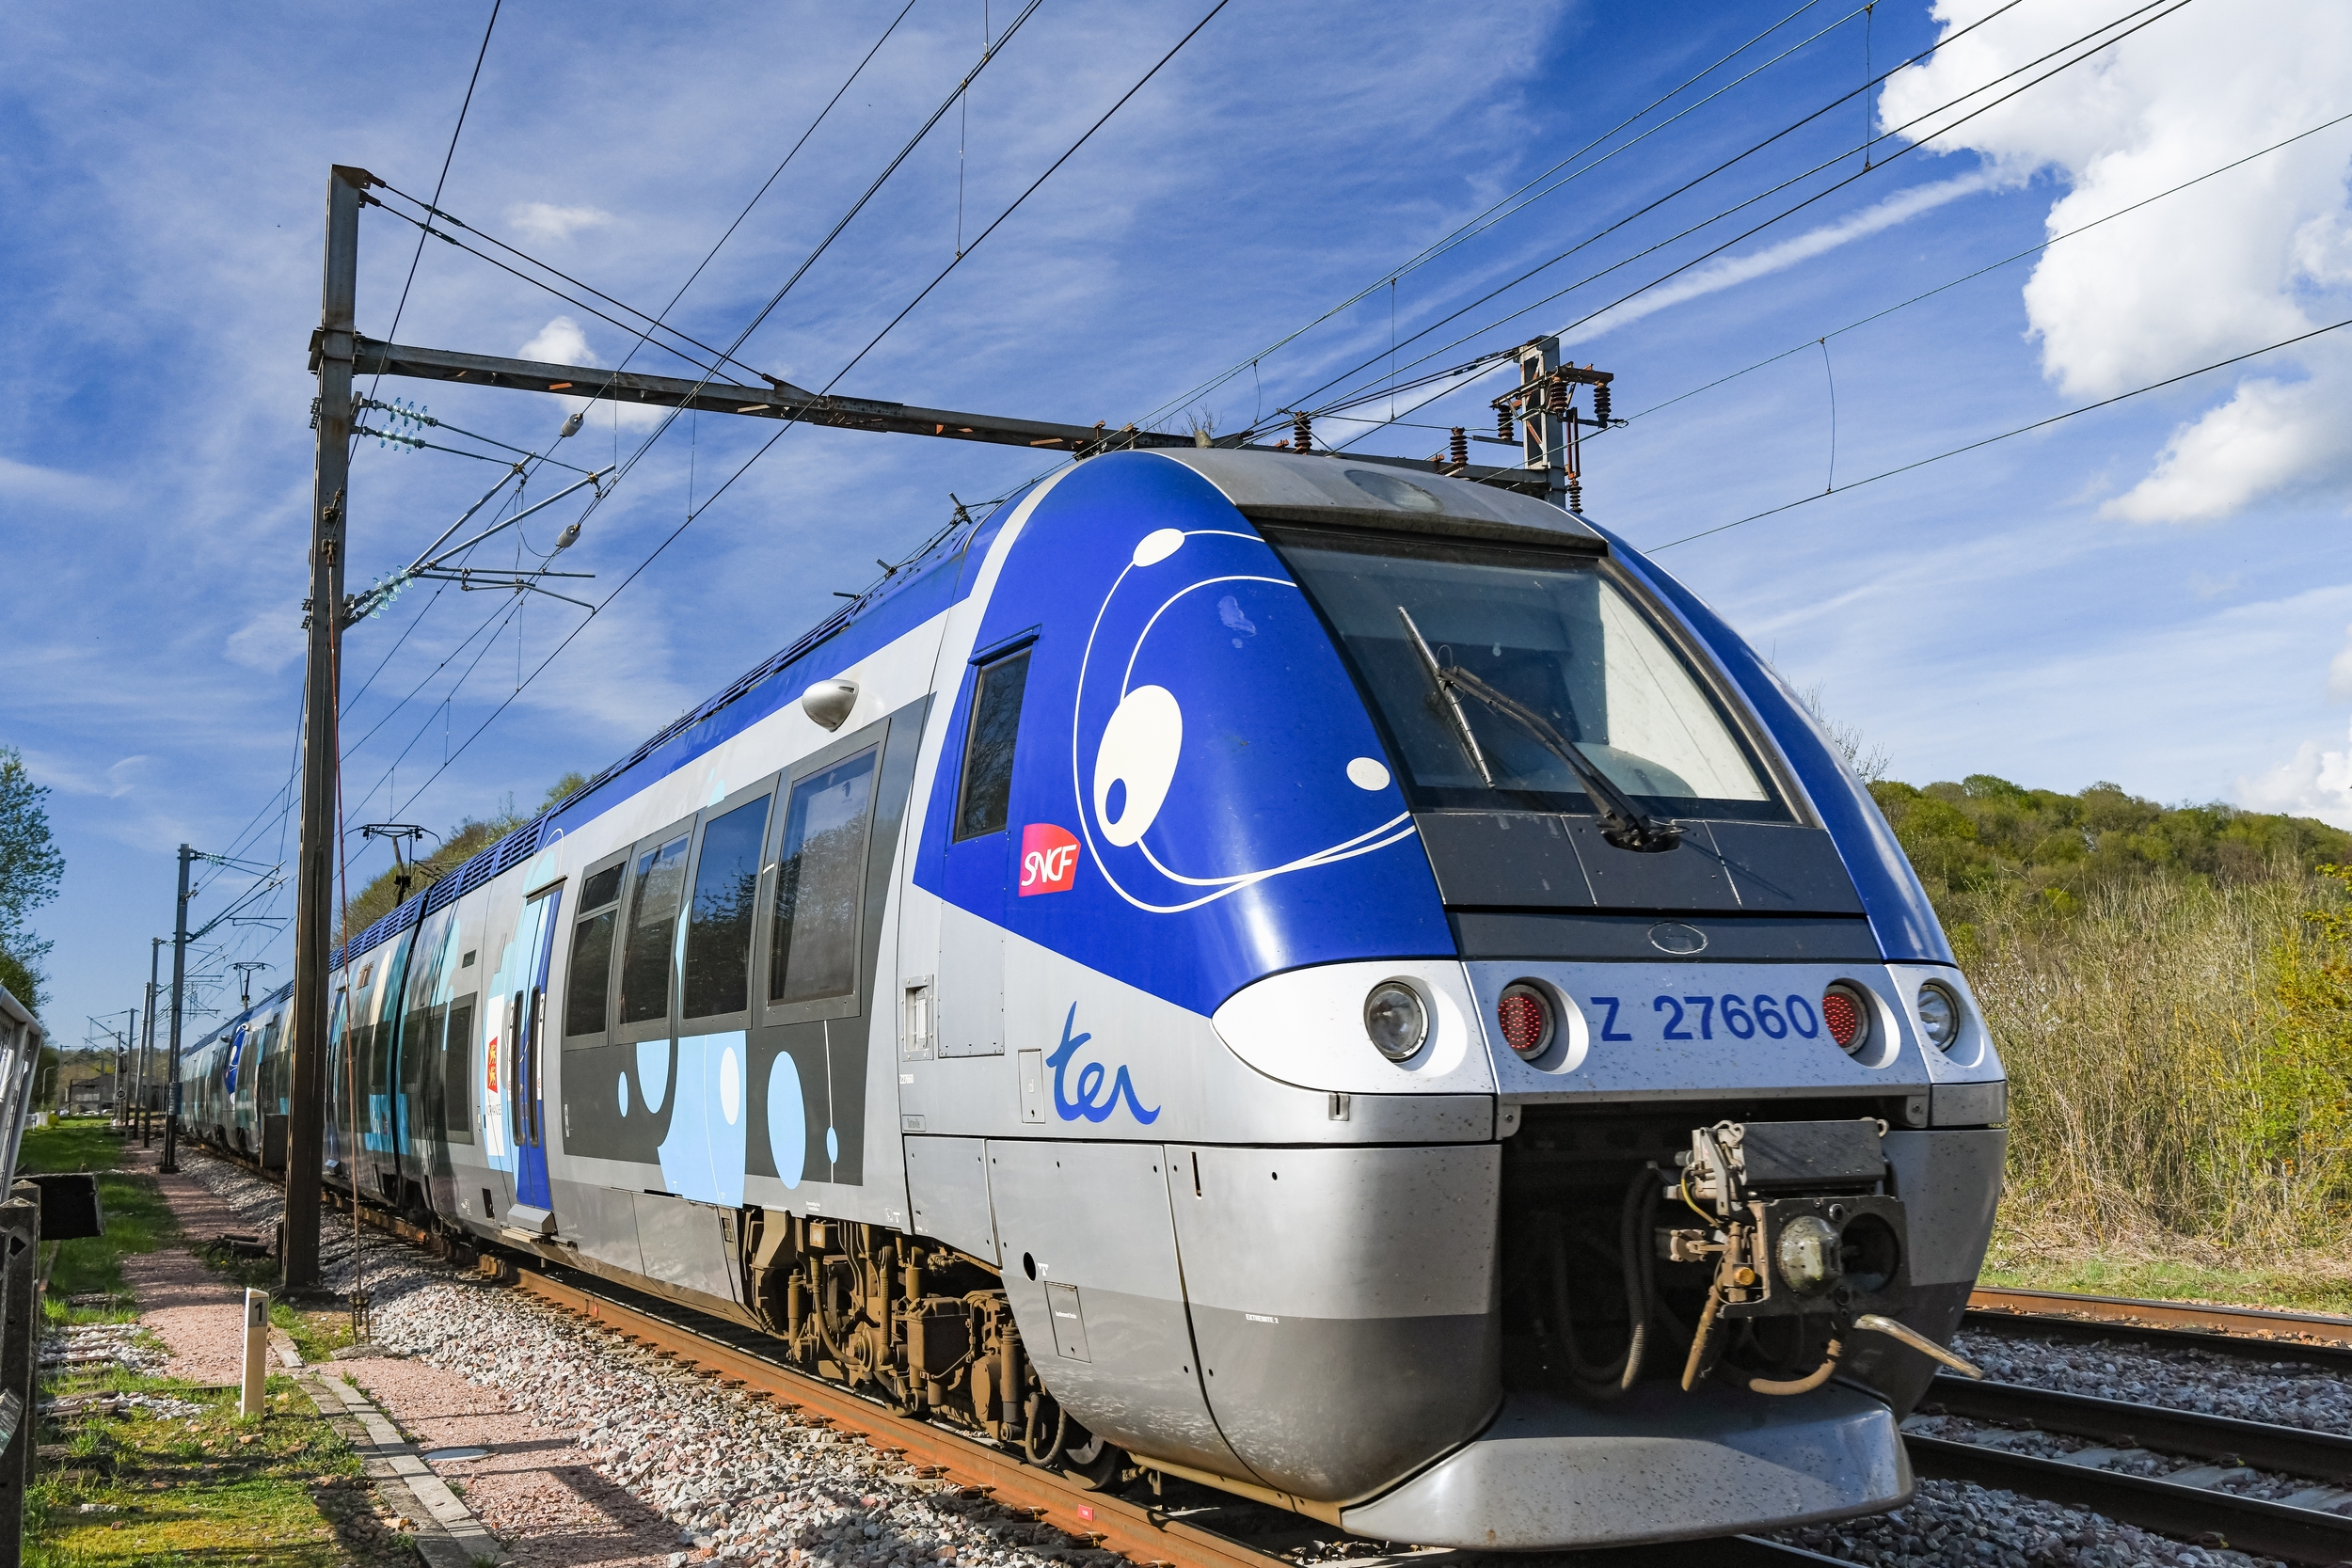 TGV et TER : trouver des billets de train pas chers à la dernière minute avant les fêtes, c'est possible ! Voici comment